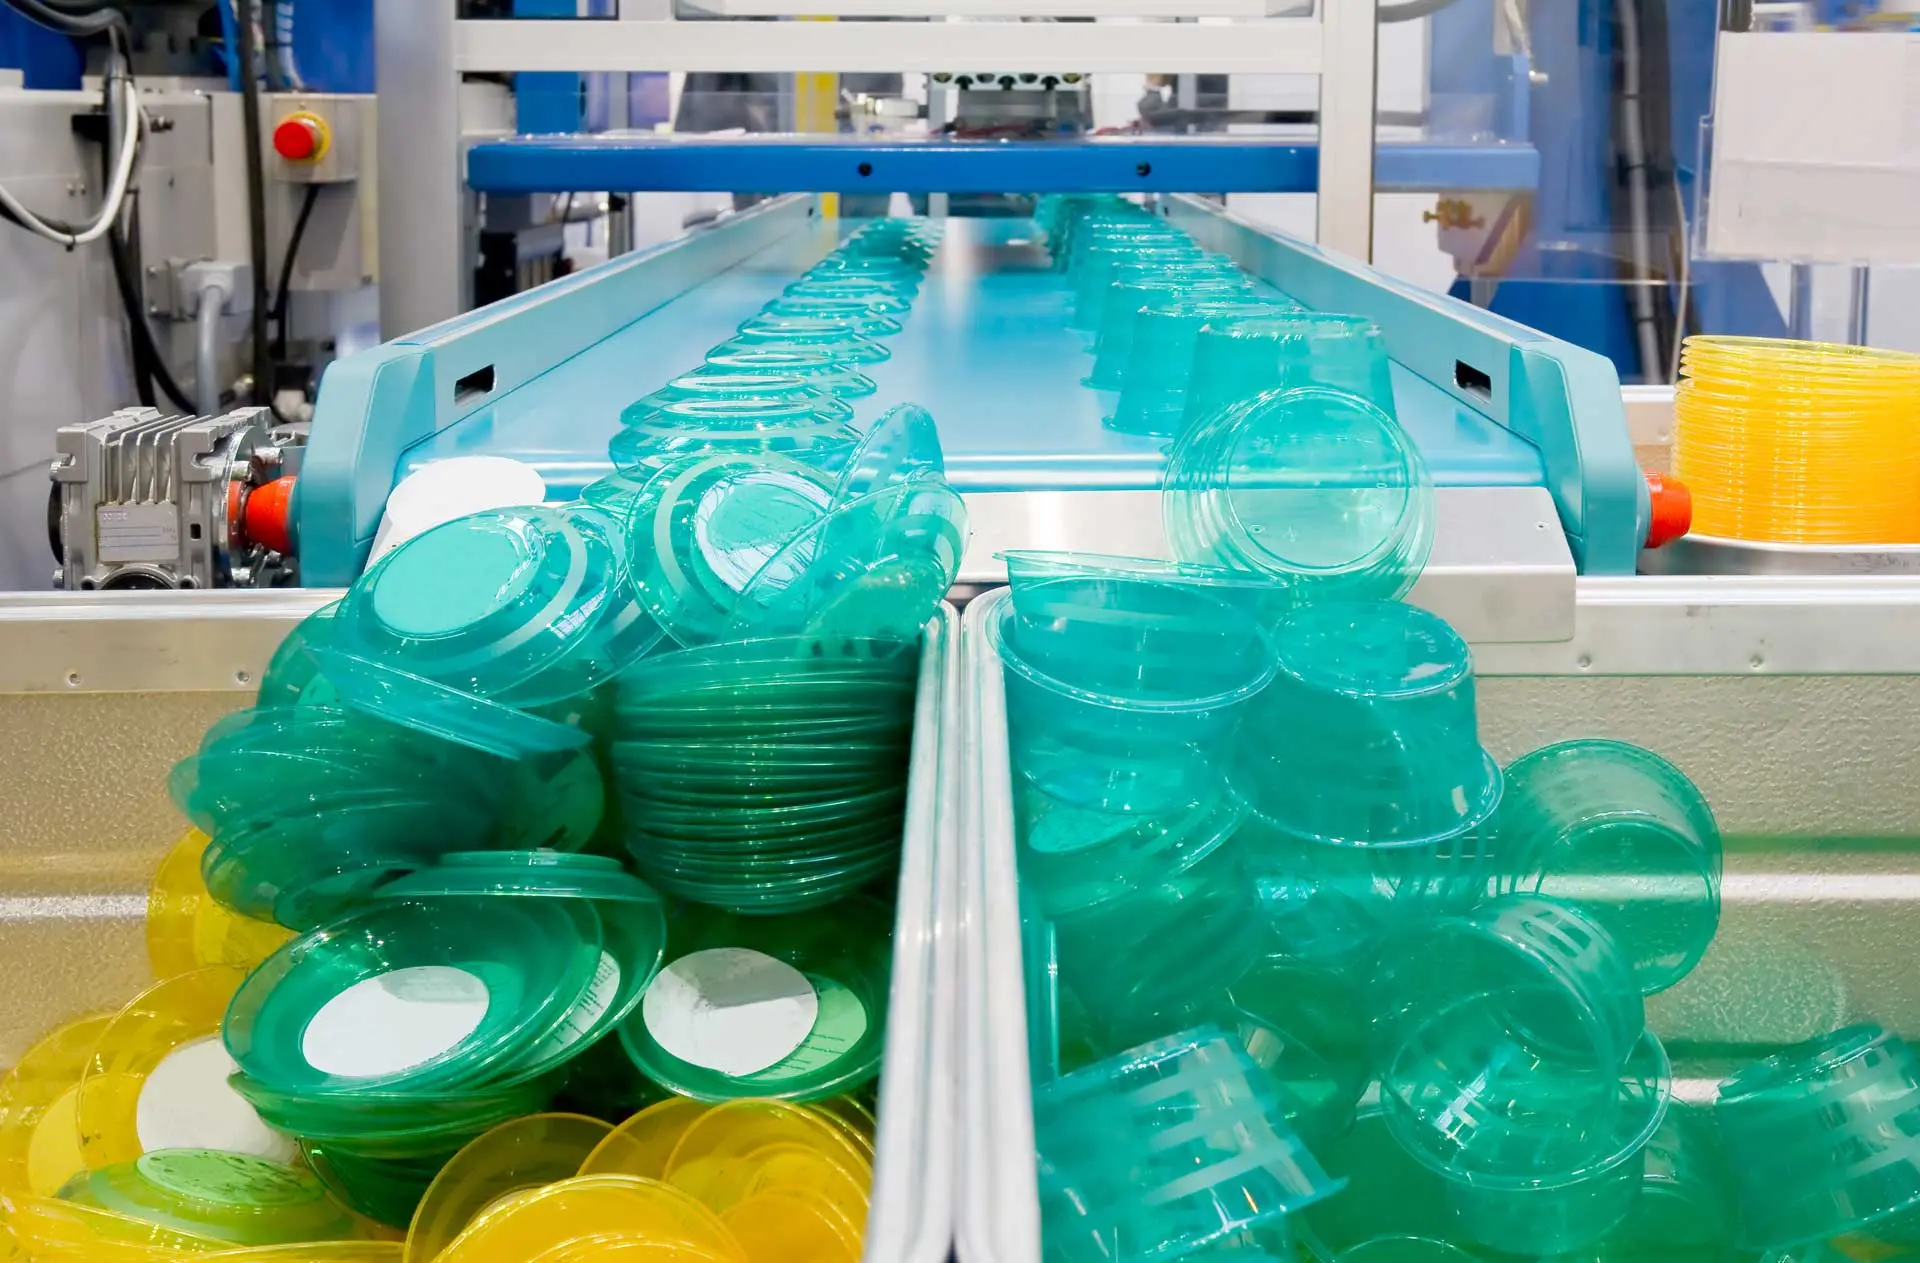 que se hace en una fabrica de plastico - Cuál es la función de una fábrica